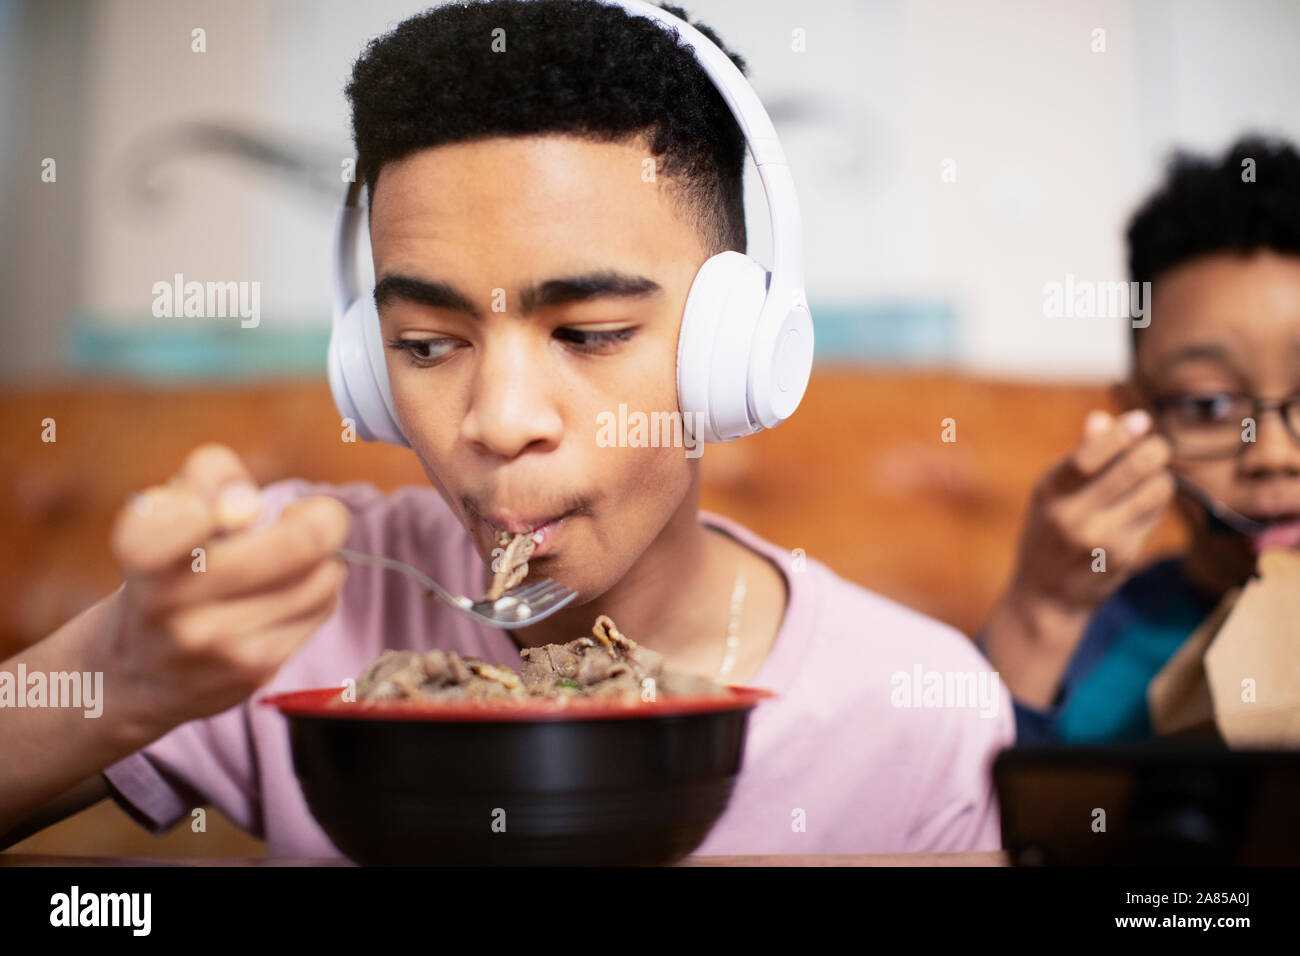 Teenage boy with headphones eating Stock Photo